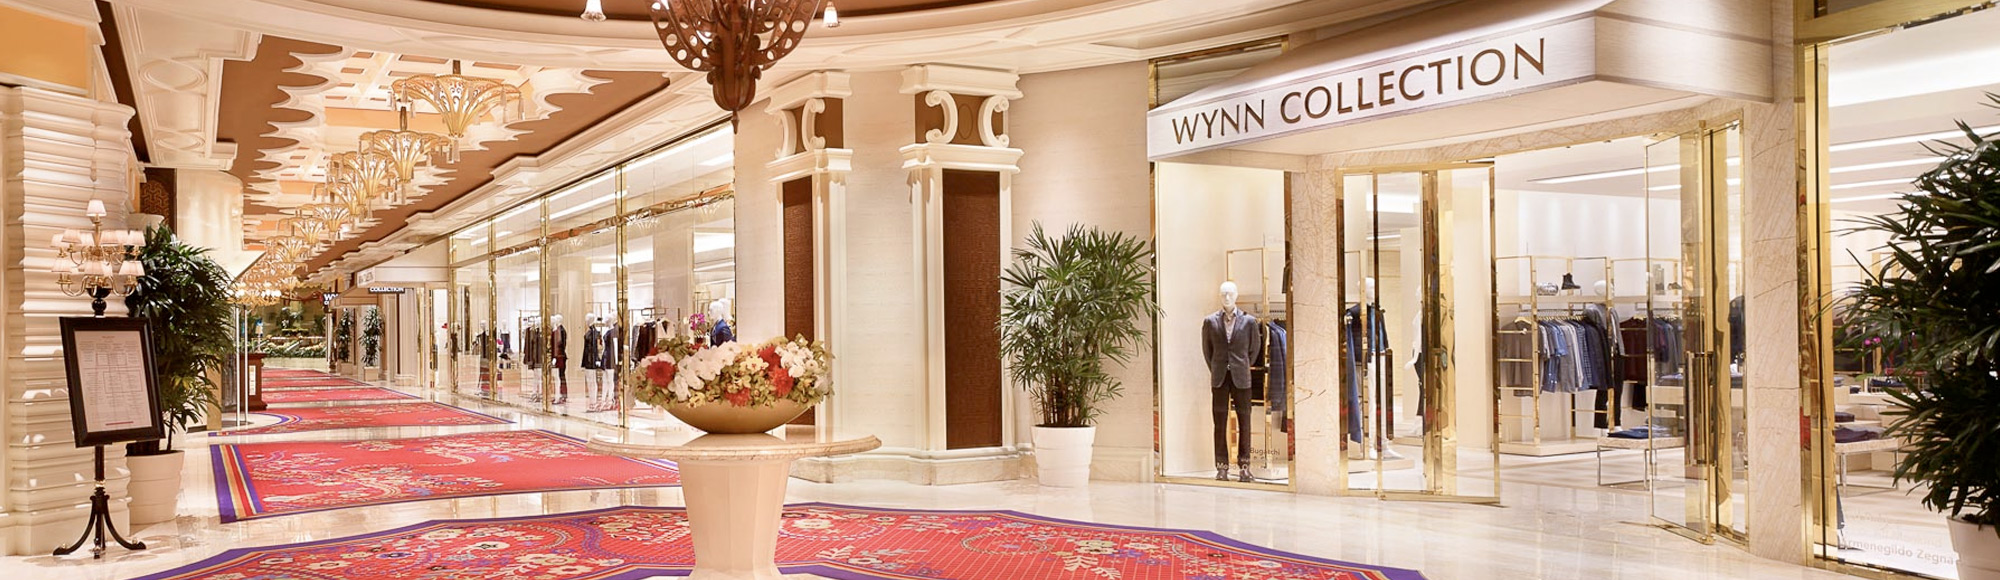 Wynn Esplanade Las Vegas - Shopping 